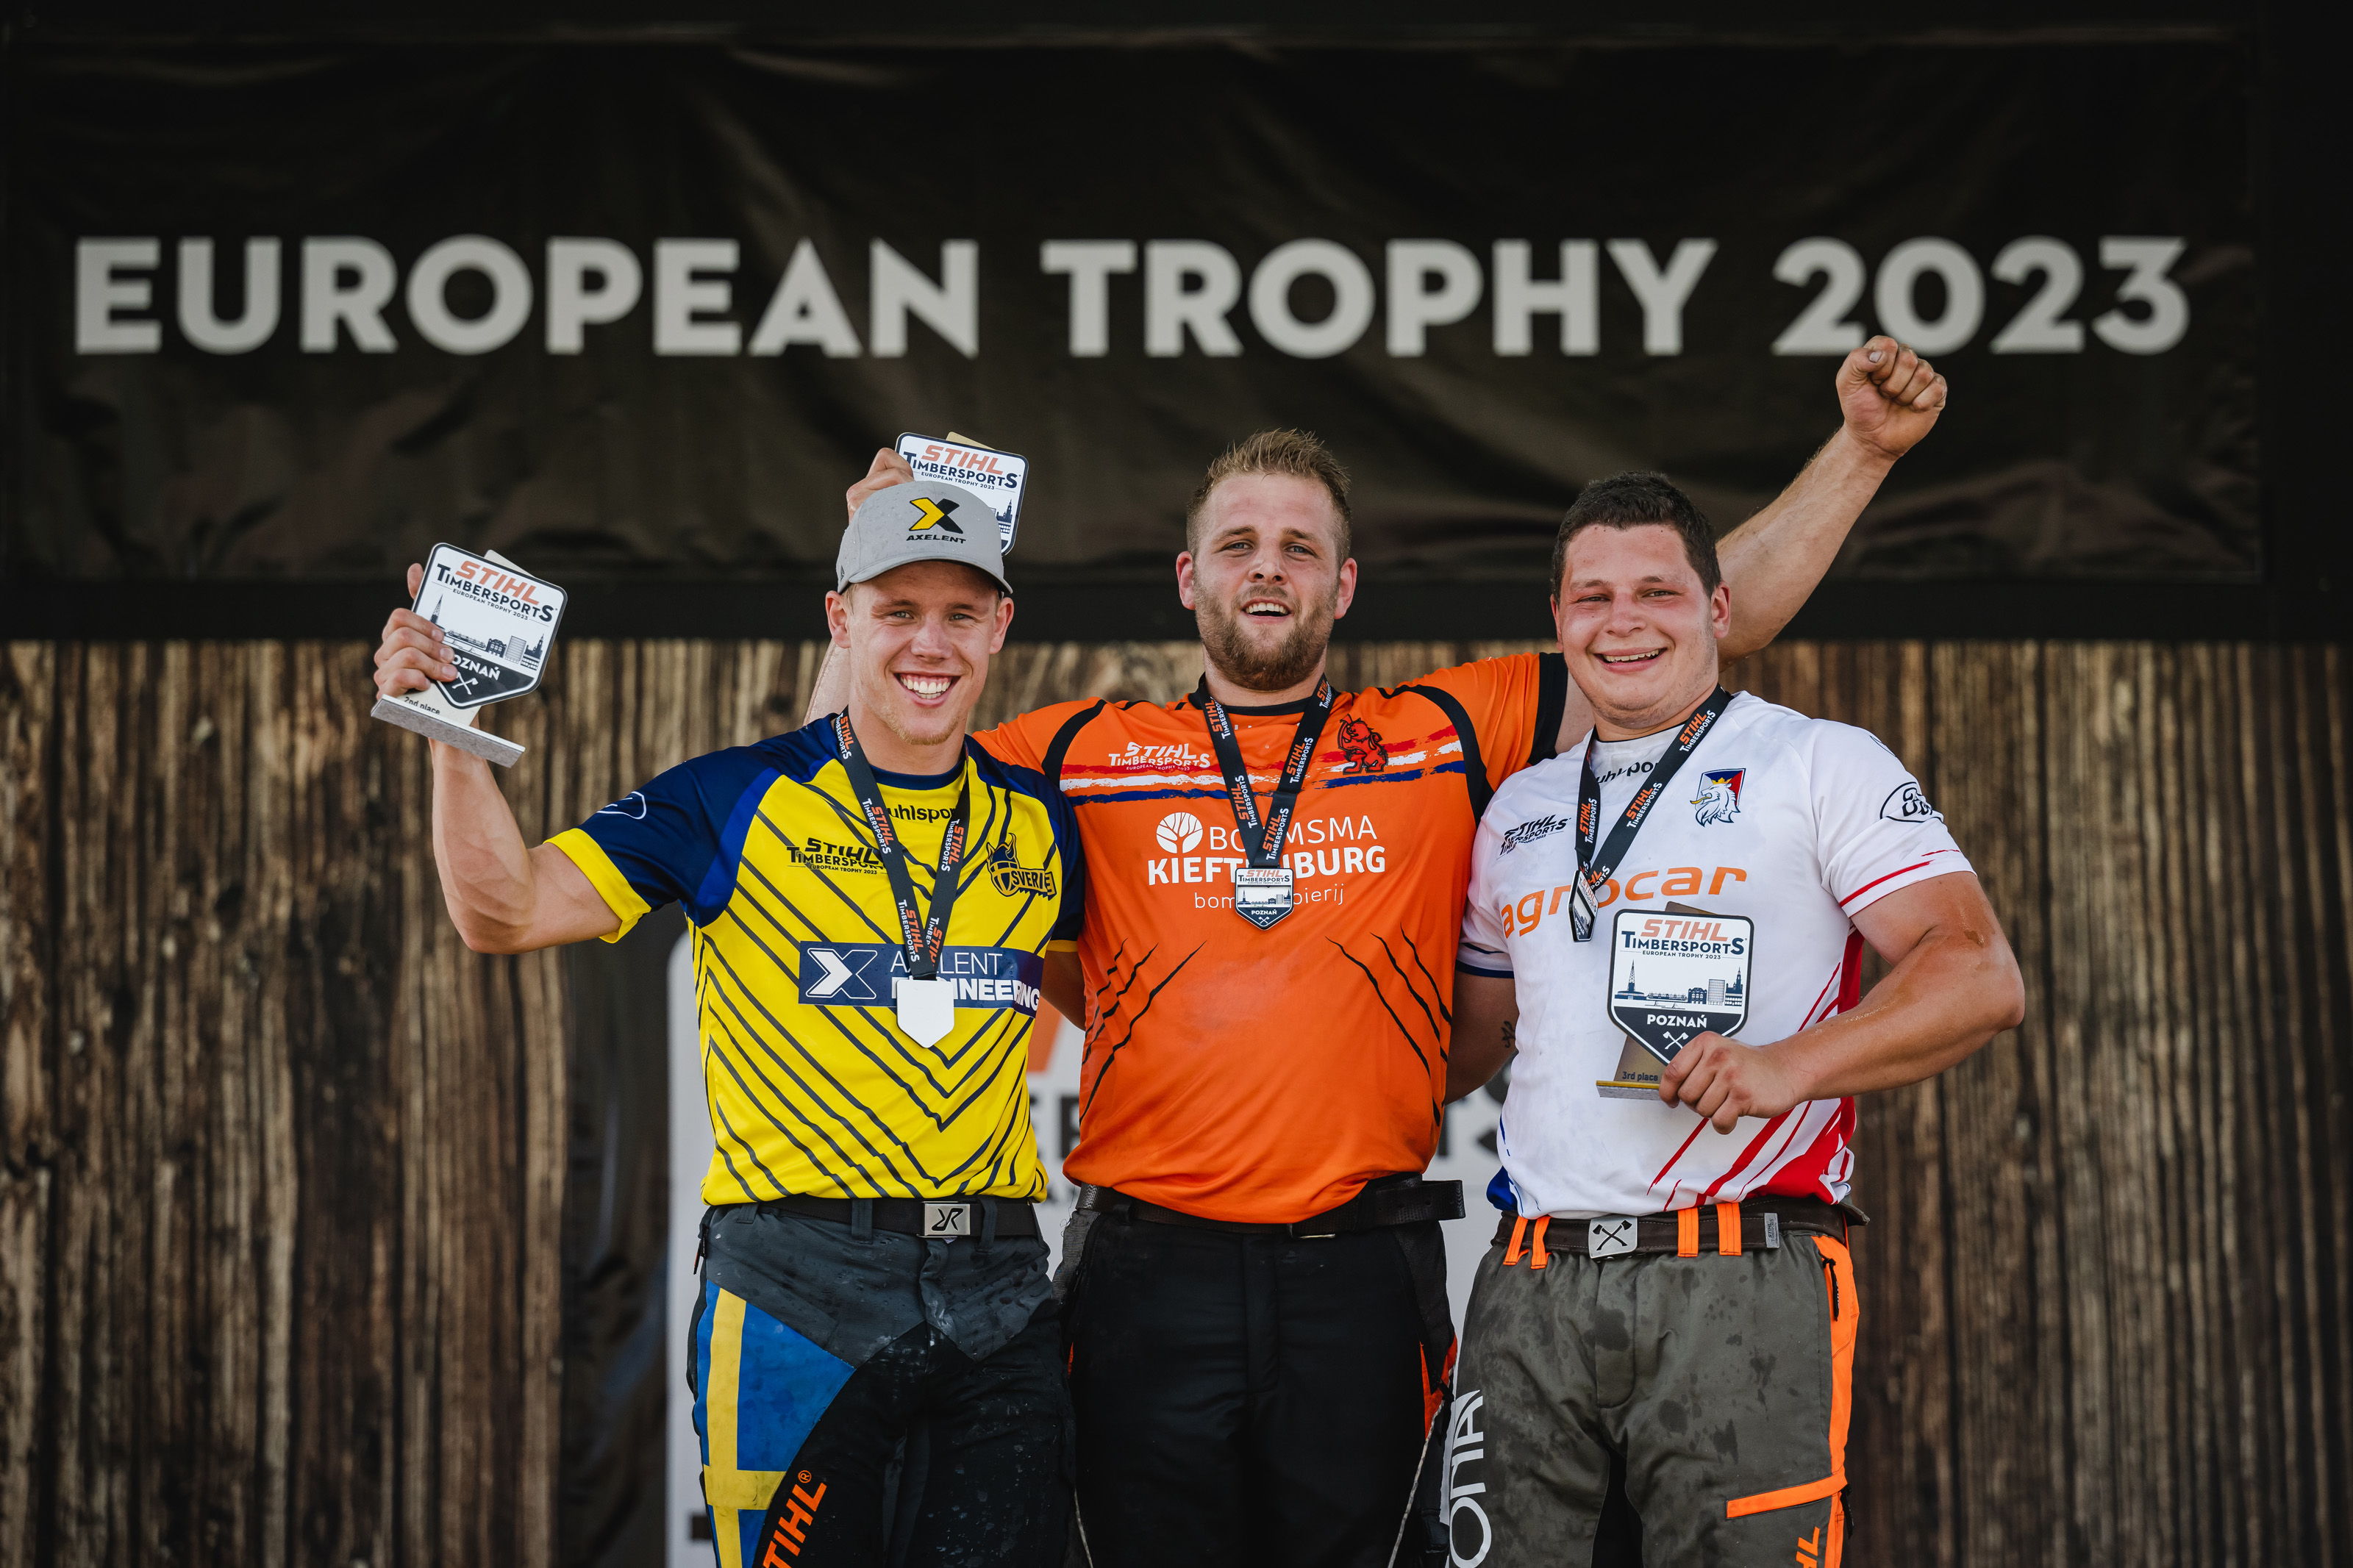 Les trois premiers du European Trophy 2023 : Redmer Knol des Pays-Bas (au centre), Ferry Svan de Suède (à gauche) et Matyáš Klíma de la République tchèque (à droite).